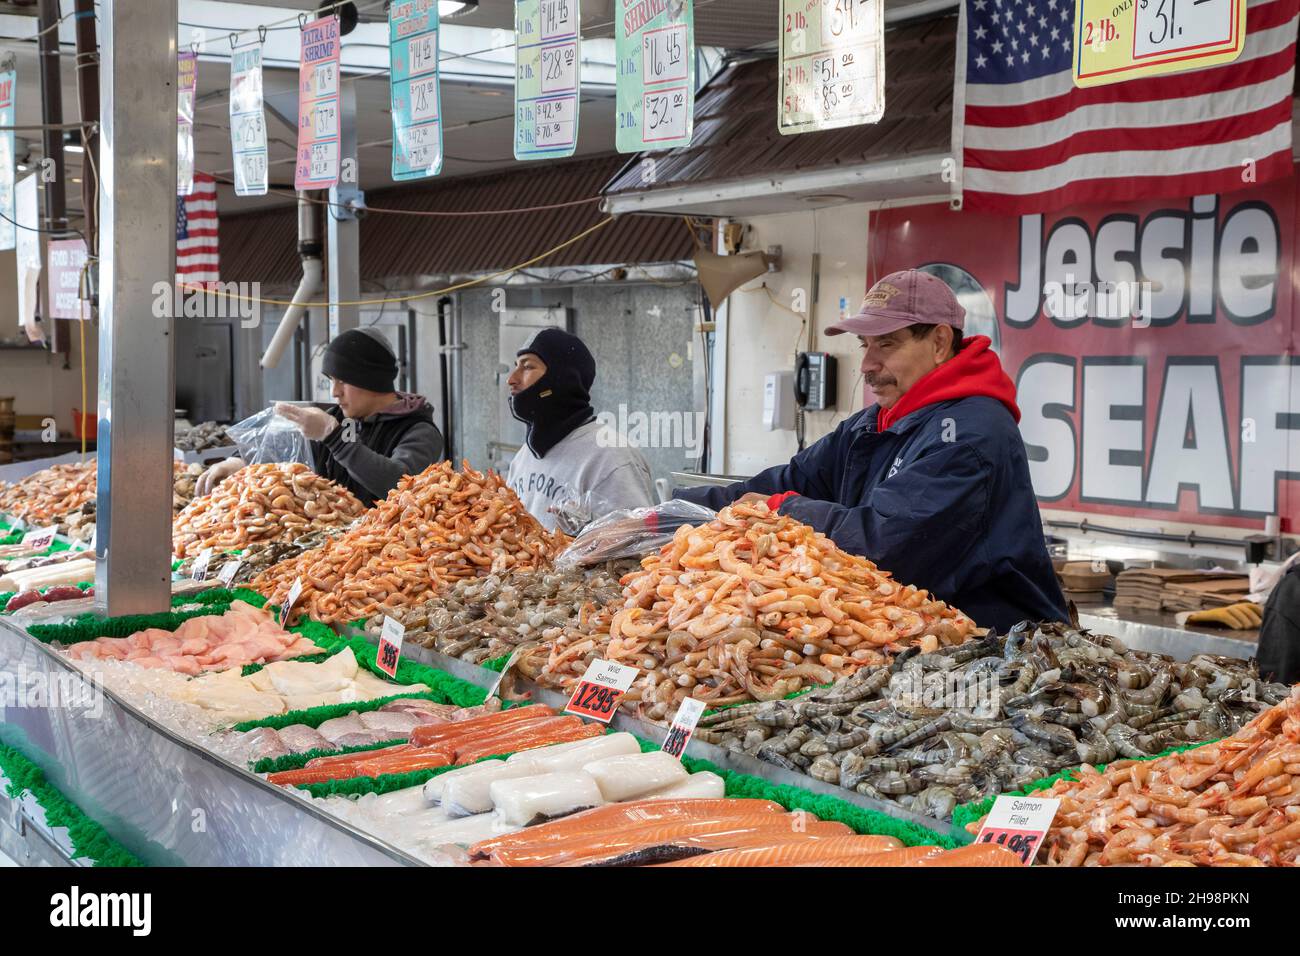 Washington, DC - der städtische Fischmarkt. Der 1805 gegründete Fischmarkt ist der älteste, kontinuierlich operierende Open-Air-Fischmarkt in den Vereinigten Staaten. Stockfoto